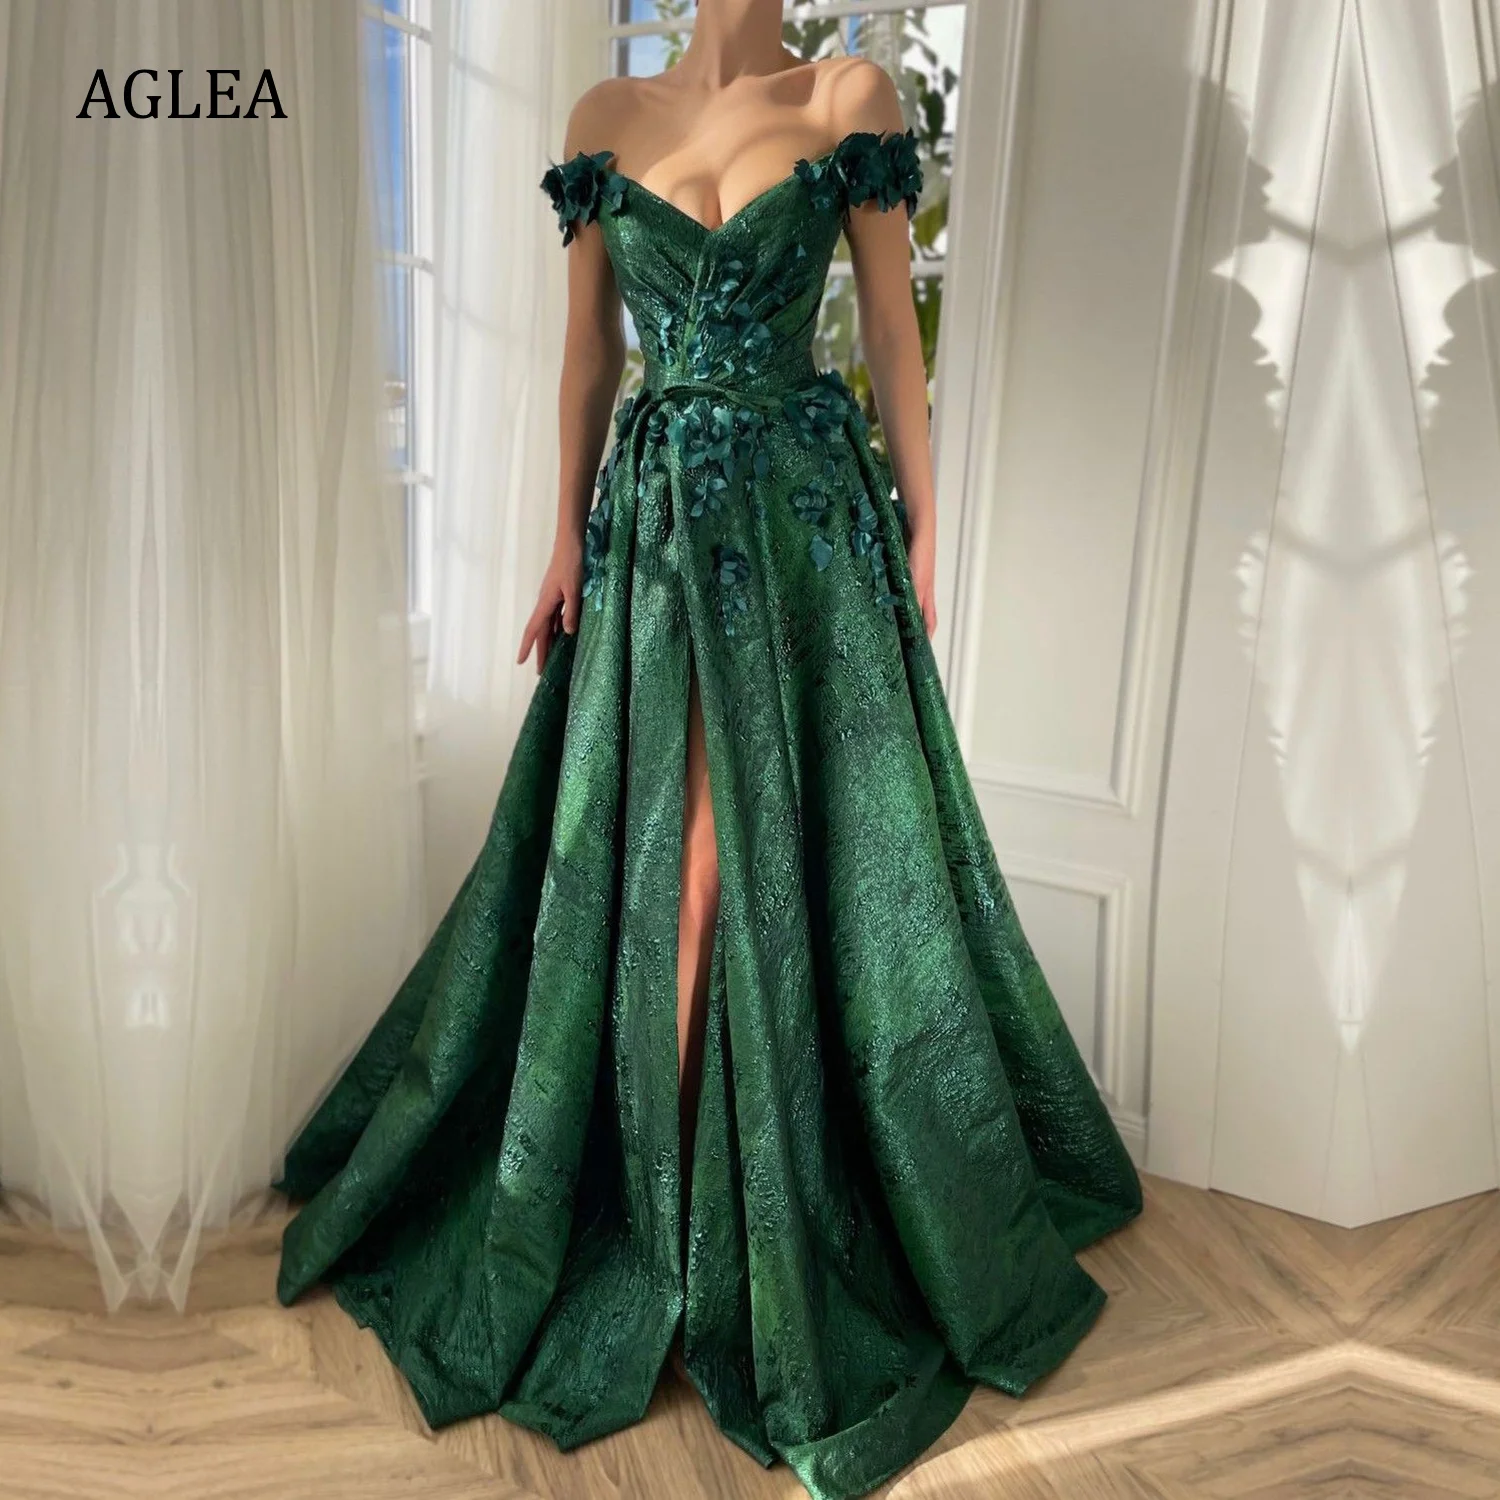 

Женские вечерние платья AGLEA, элегантные строгие платья в пол с открытыми плечами, складками и драпировкой, трапециевидного силуэта для выпускного вечера